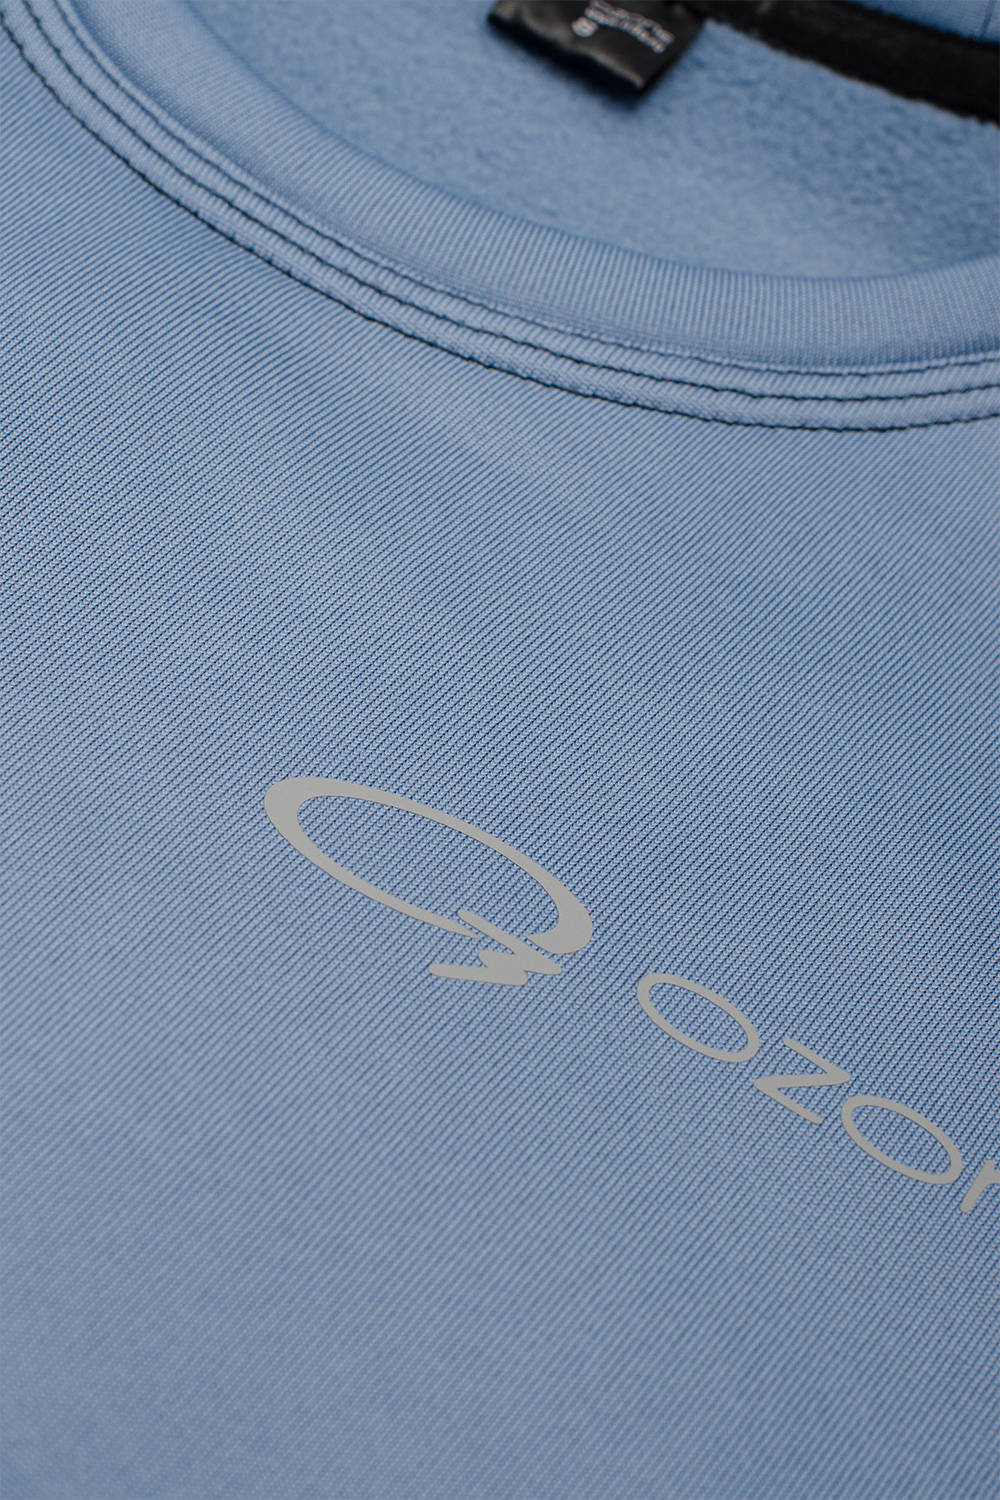 Мужской джемпер термобелье Spot купить в магазине спортивной одежды O3 Ozone